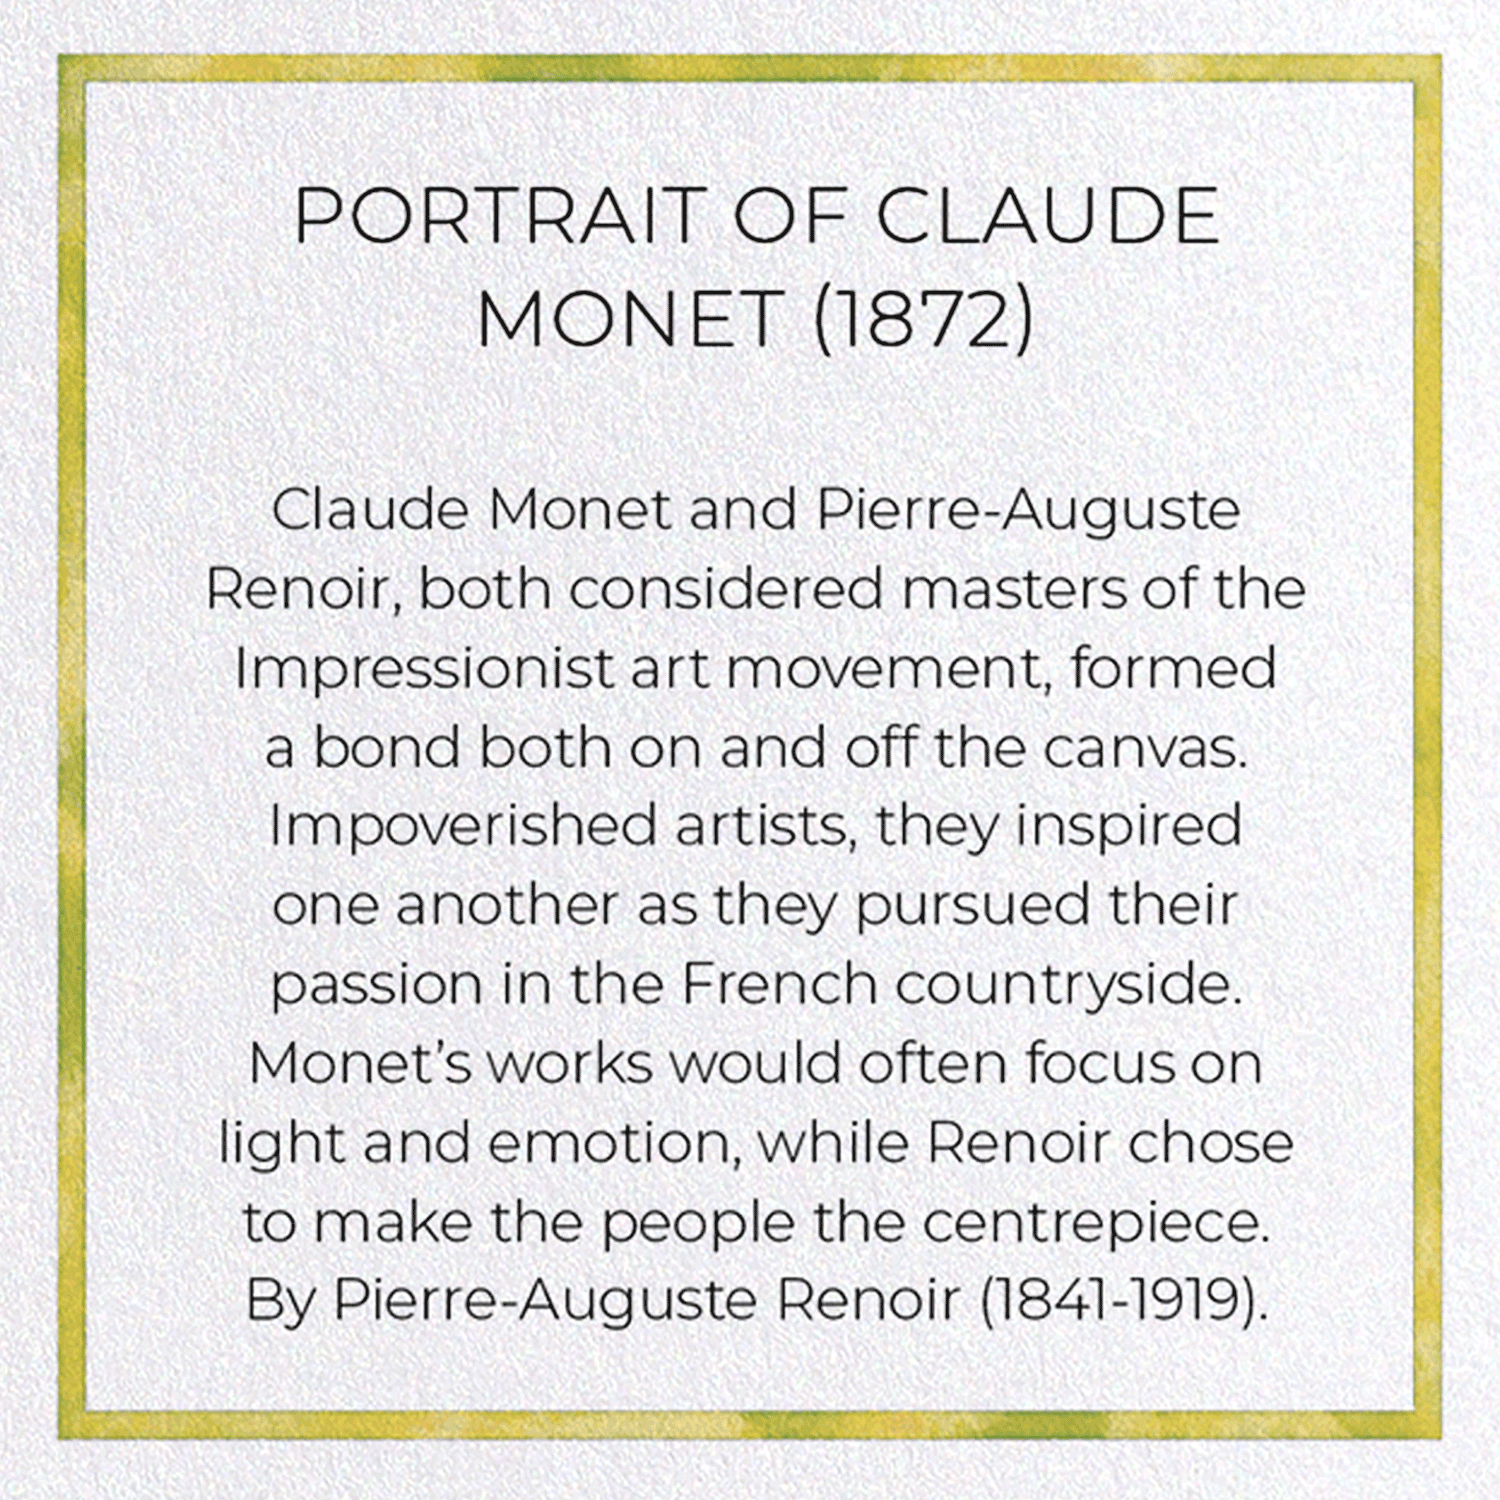 PORTRAIT OF CLAUDE MONET (1872)